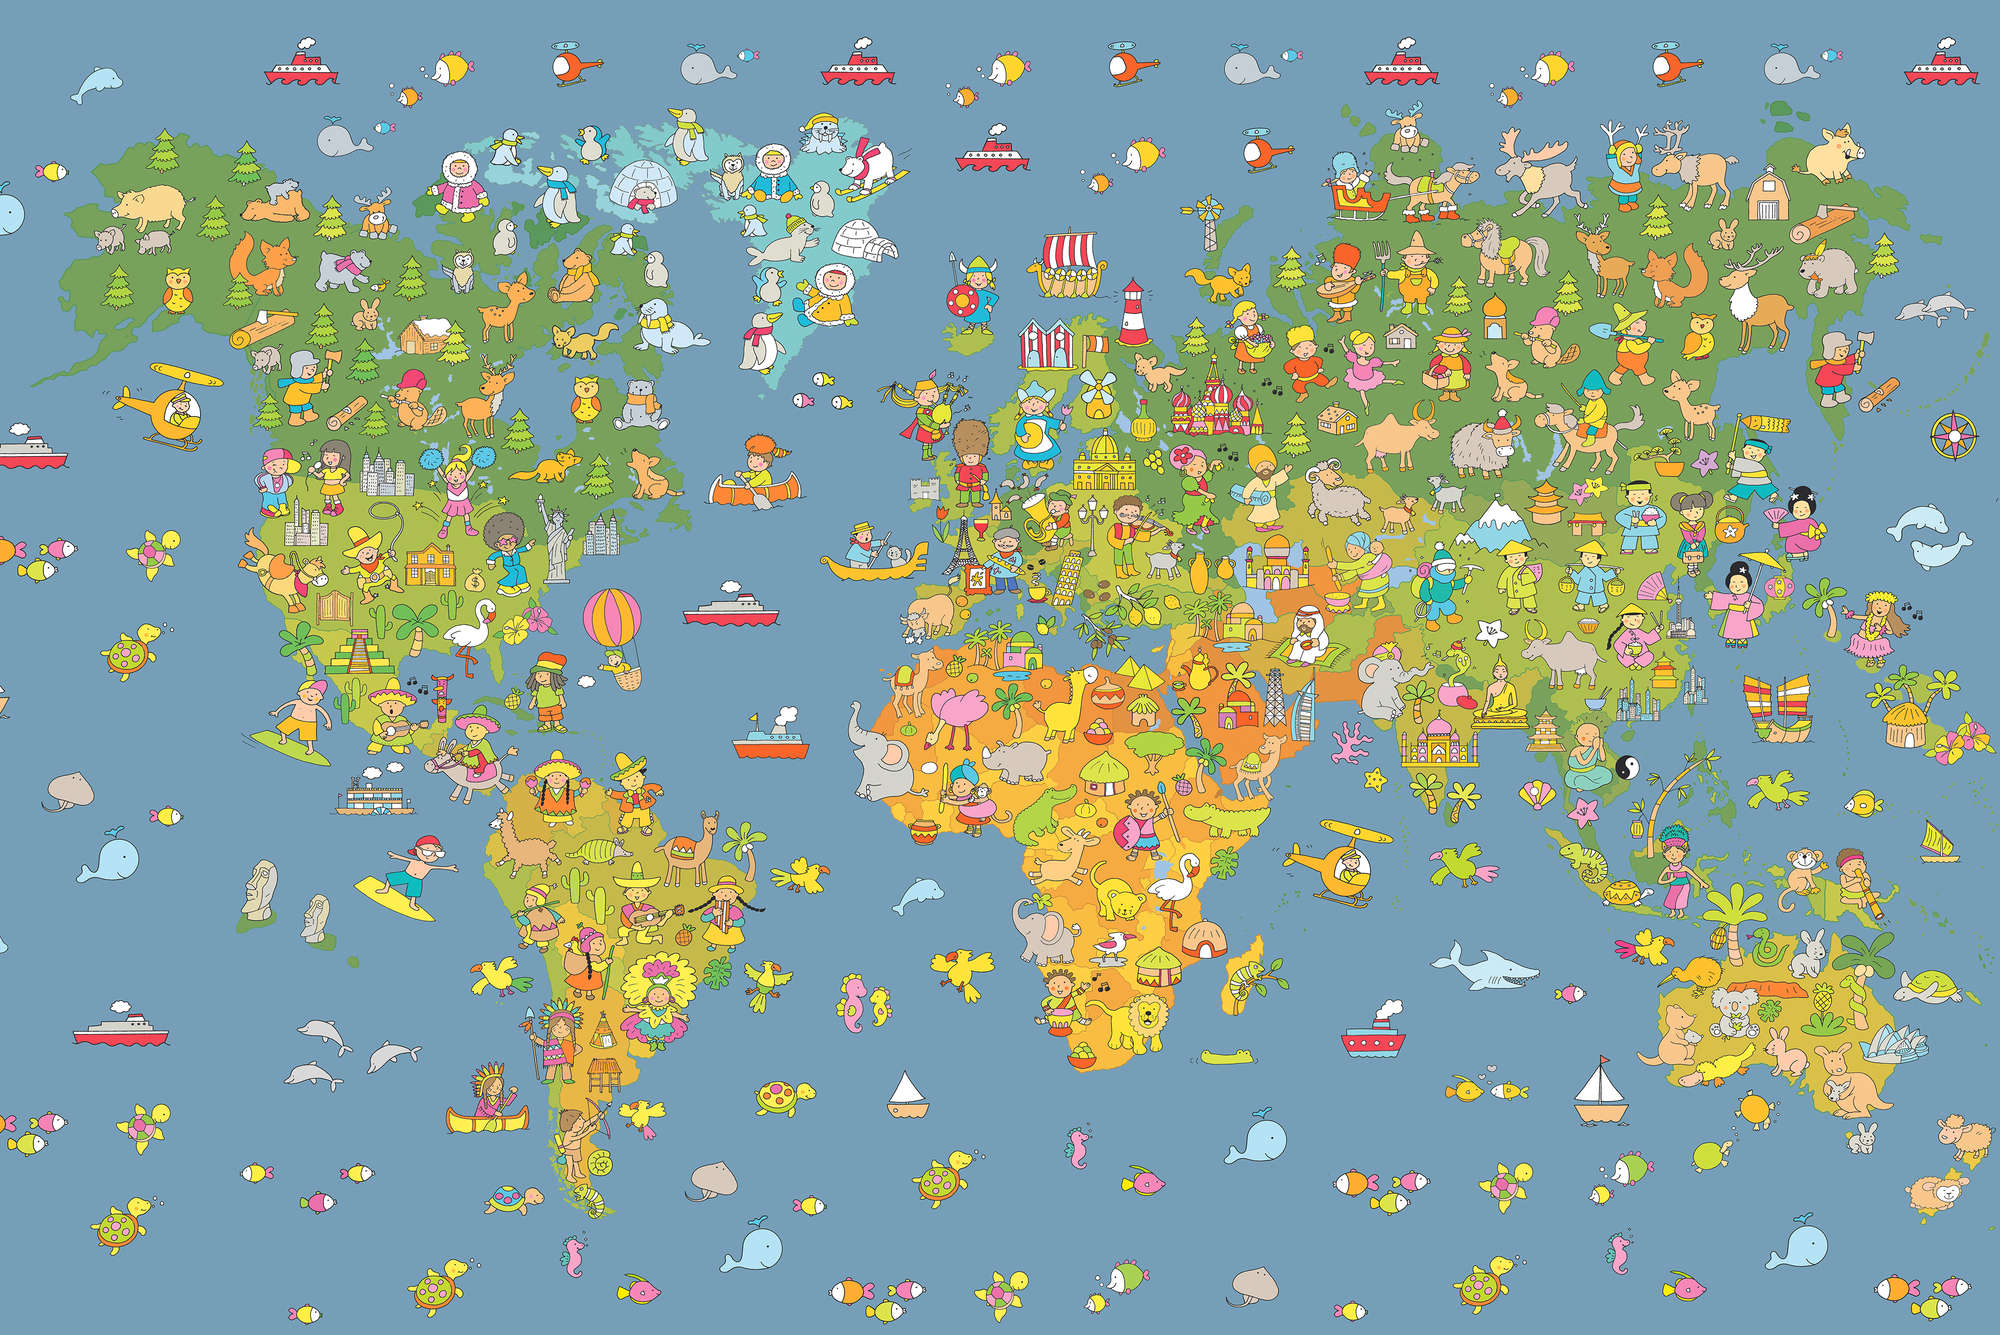             Kinderbehang Wereldkaart met Landensymbolen op Parelmoer gladde vlieseline
        